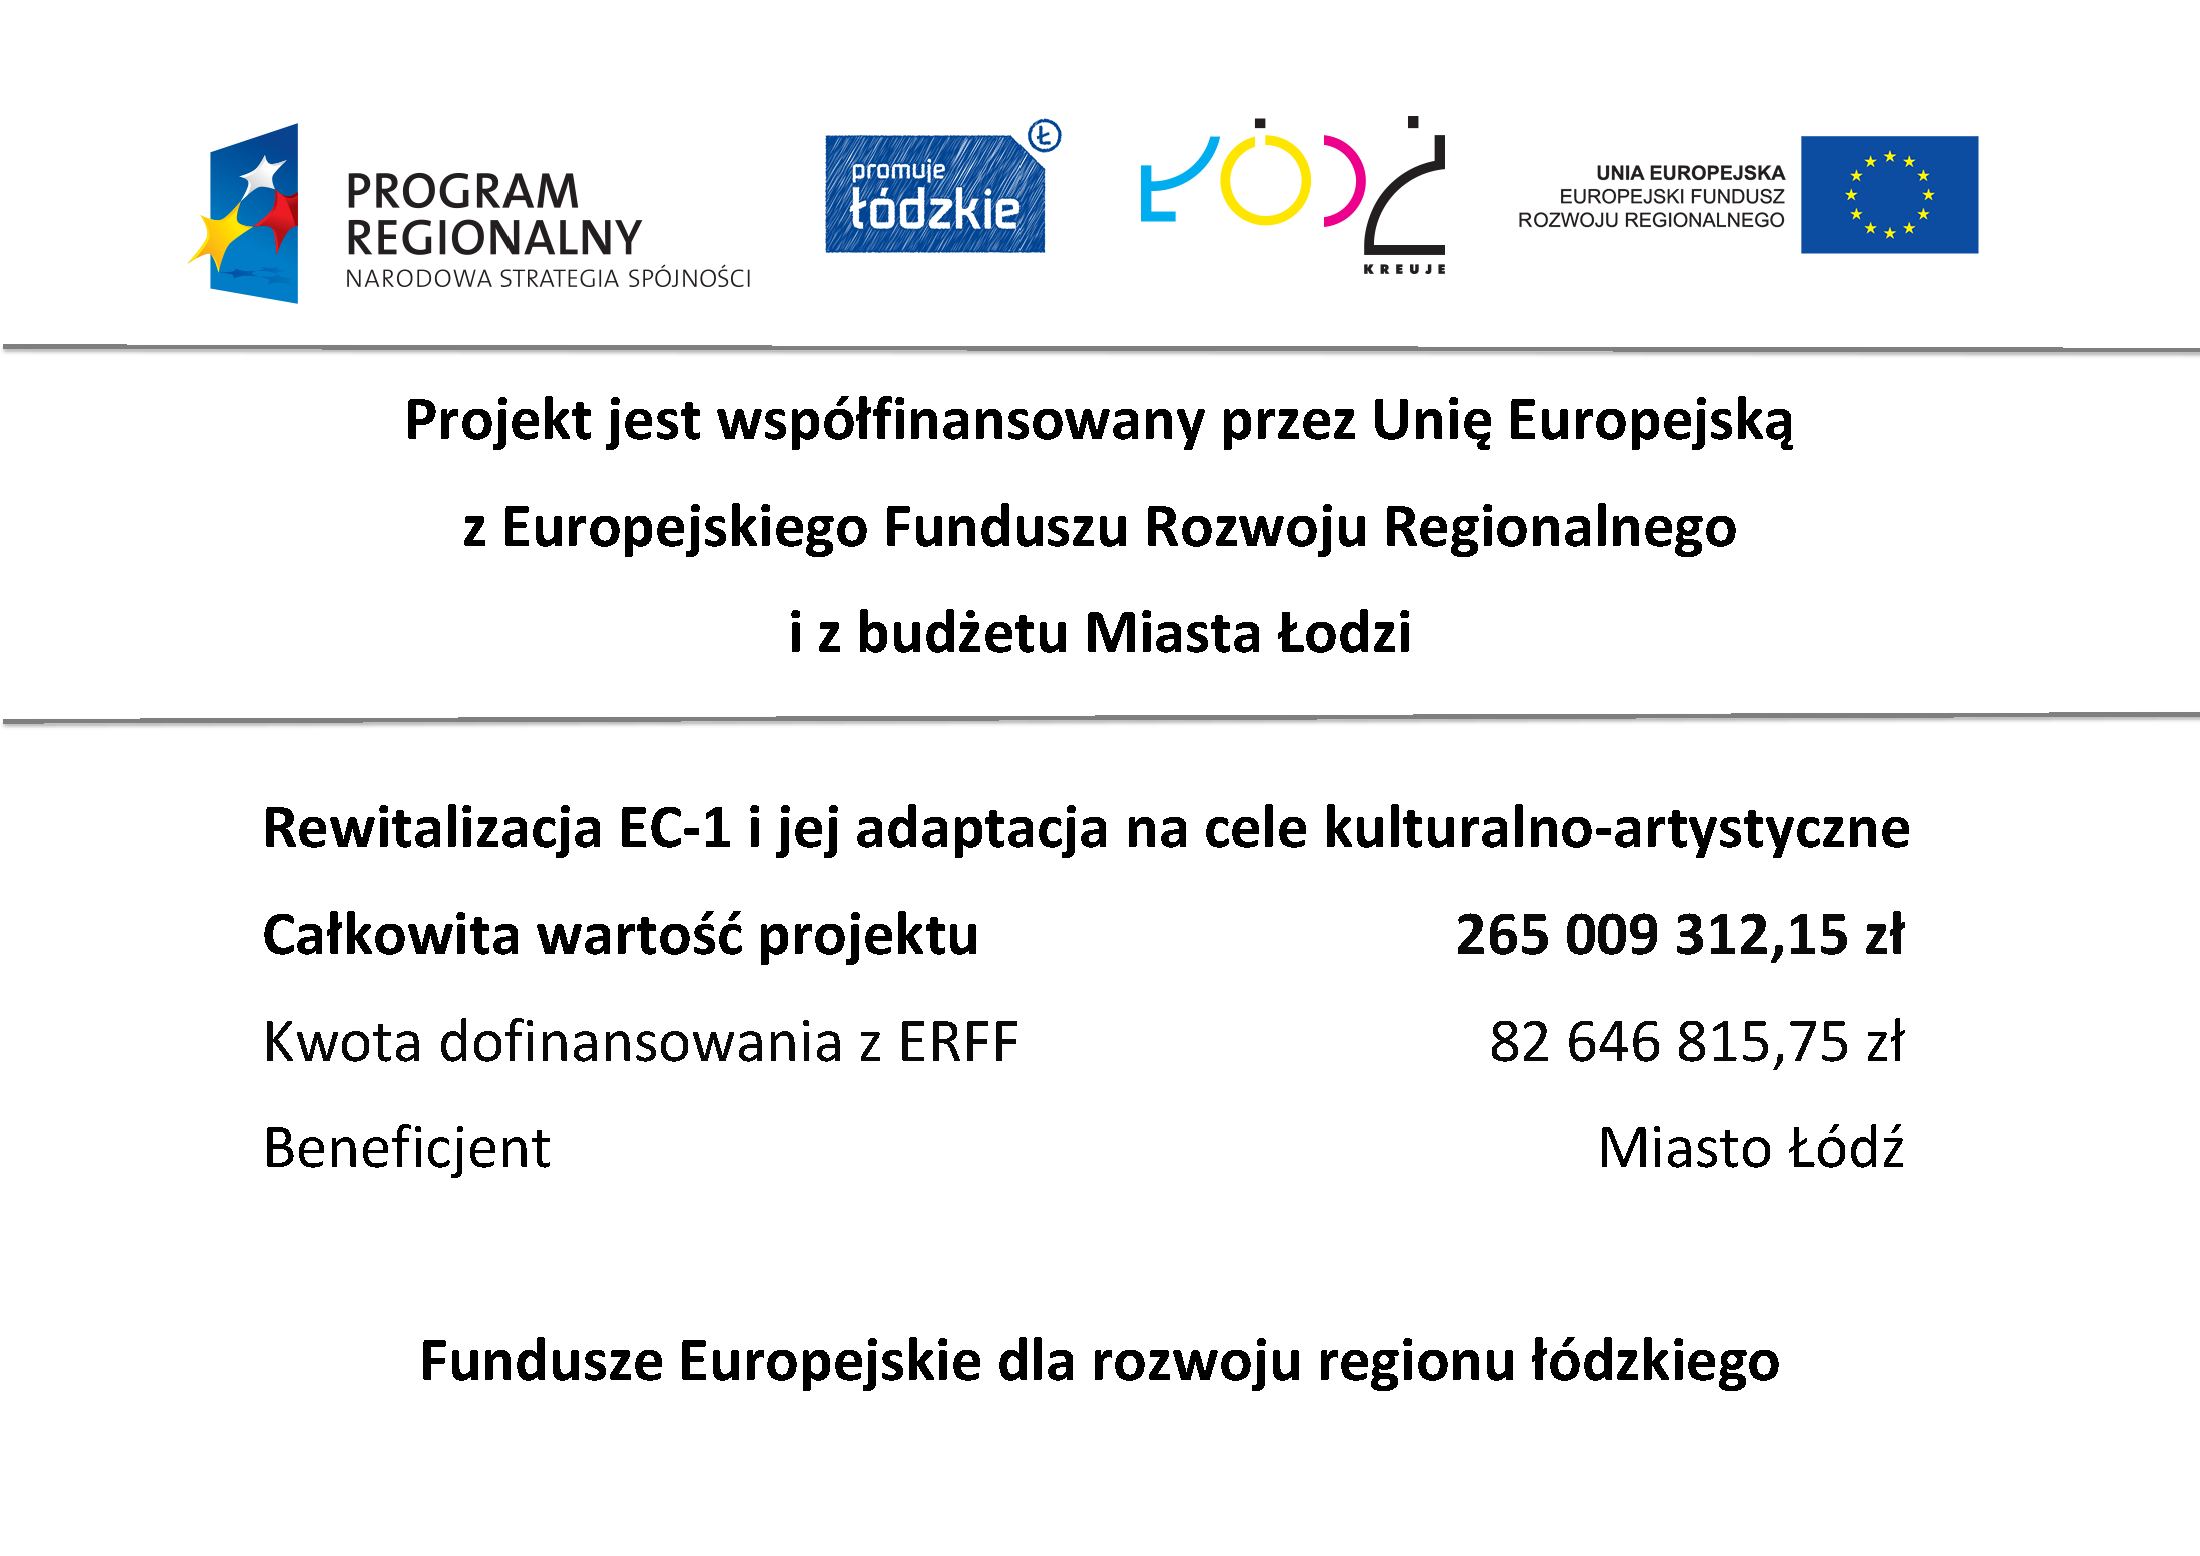 Rewitalizacja EC1 - projekt dofinansowany przez UE